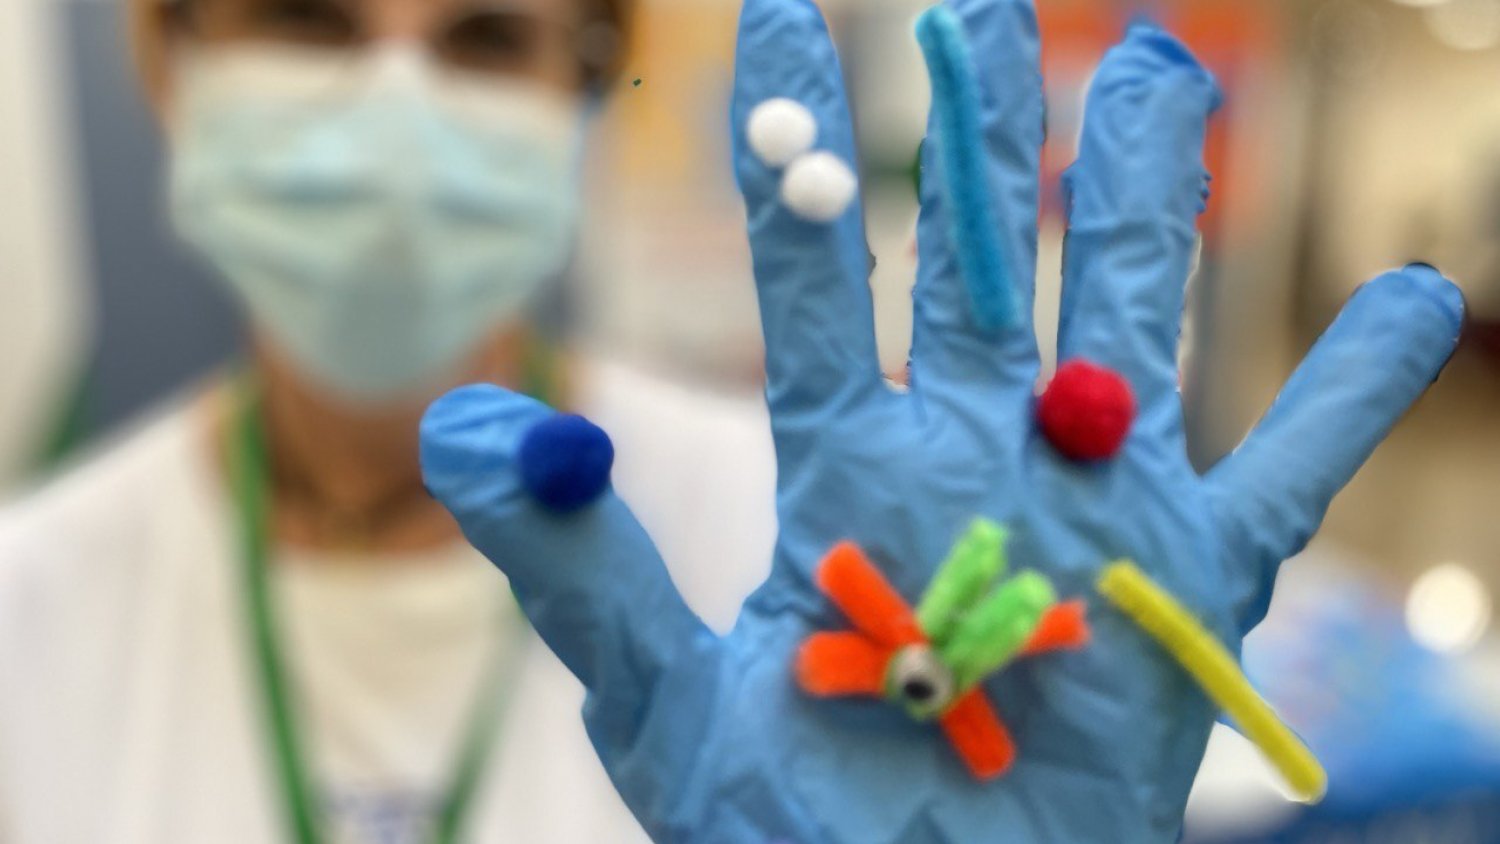 El Hospital Clínico de Málaga organiza actividades para concienciar de una correcta higiene de manos